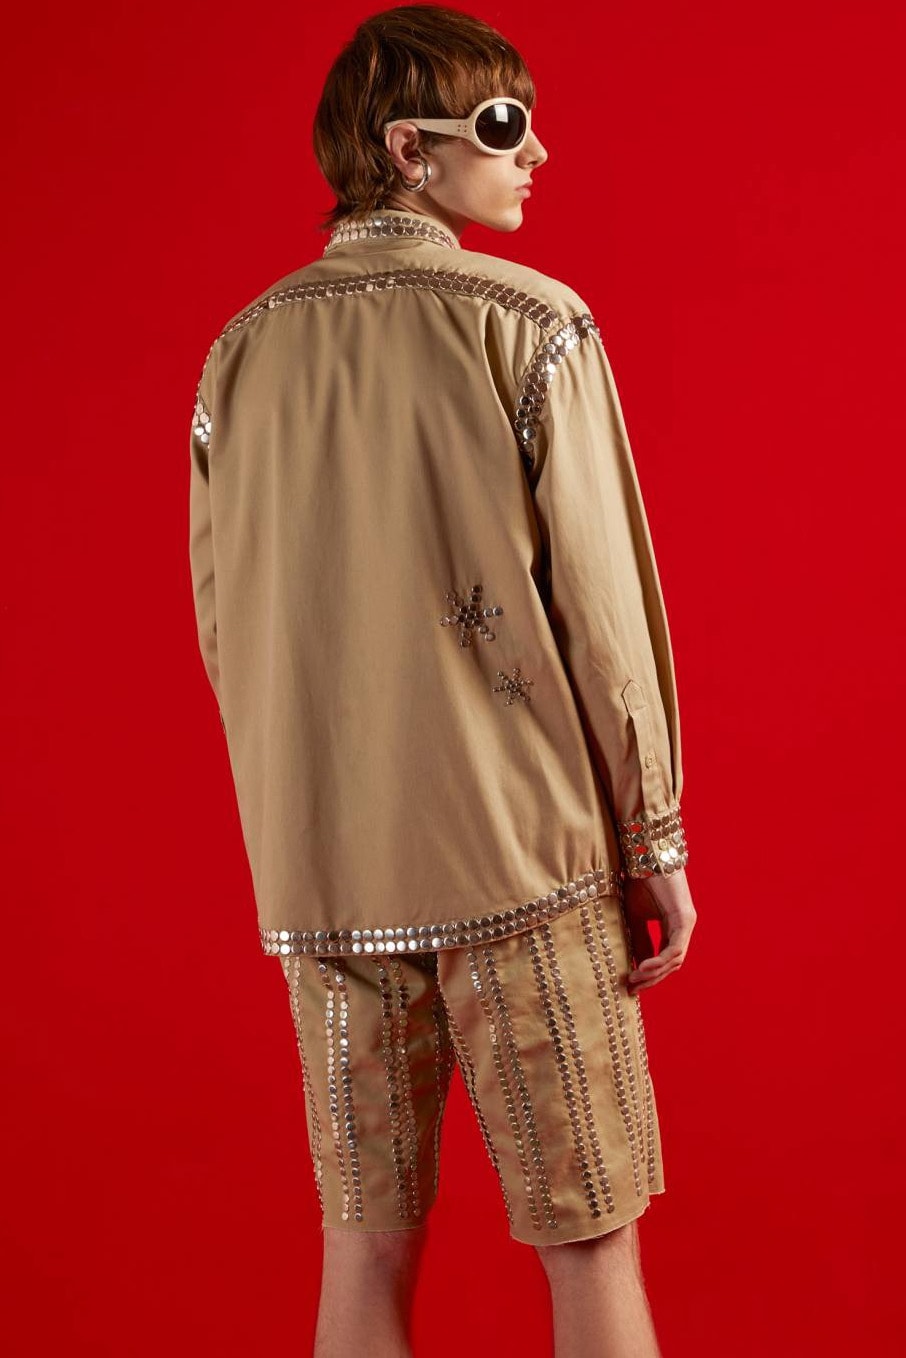 グッチのオンラインコンセプトショップ ヴォールトがディッキーズとのカプセルコレクションを発表 Dickies Gucci Vault Exclusive Collection Luxury Workwear Stud Grommet Eisenhower Jacket 874 Pant Bermuda Work Shirt Shorts